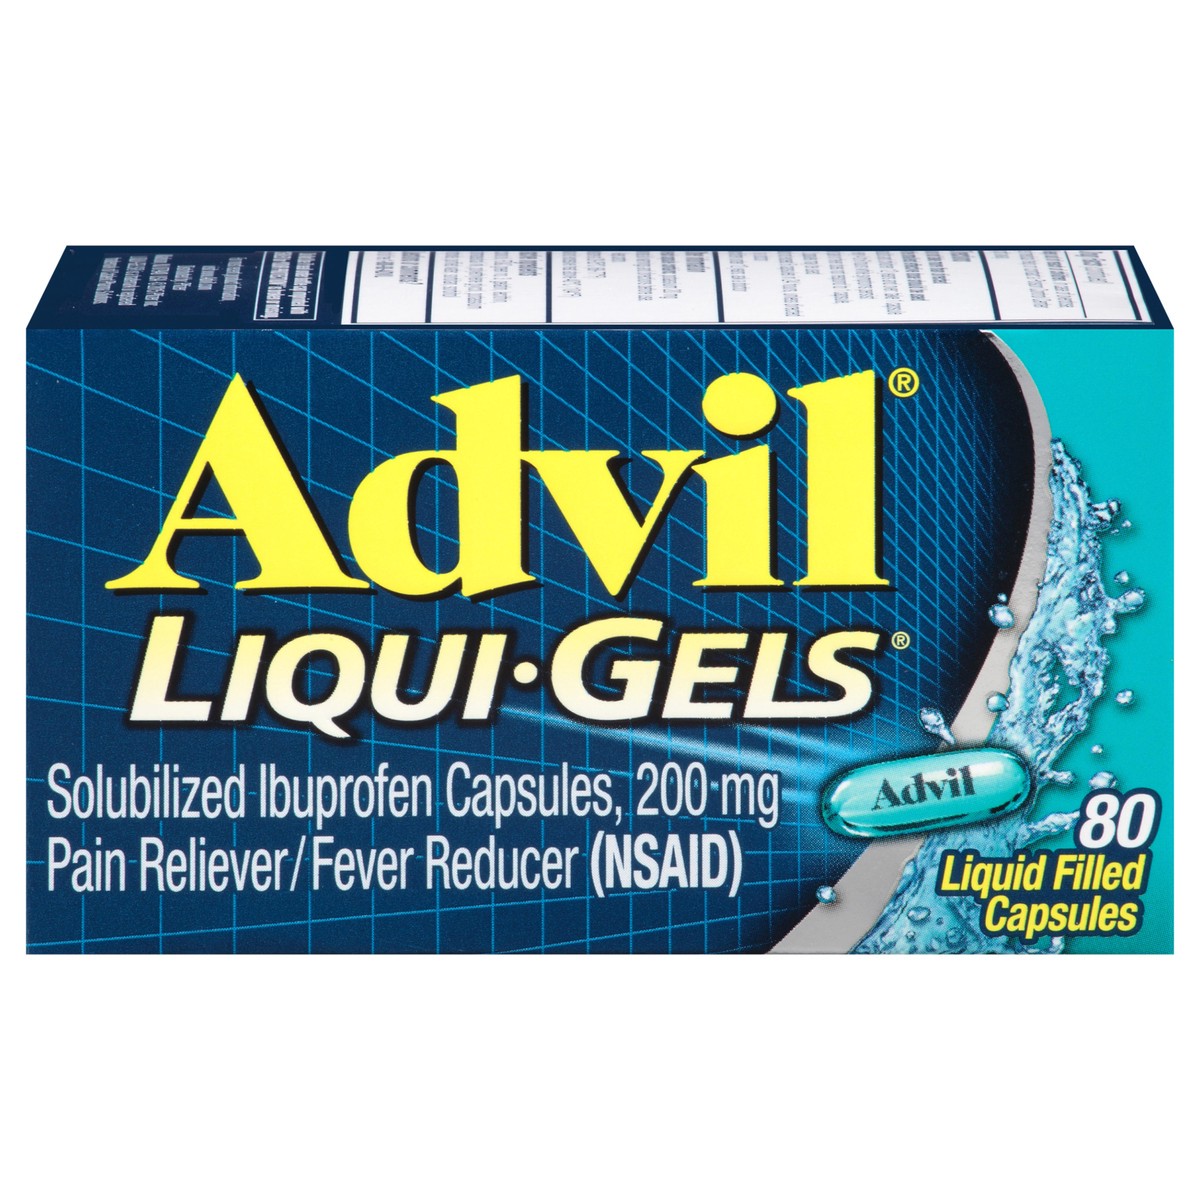 slide 1 of 7, Advil Ibuprofen Liquid Filled Capsuls, 80 ct